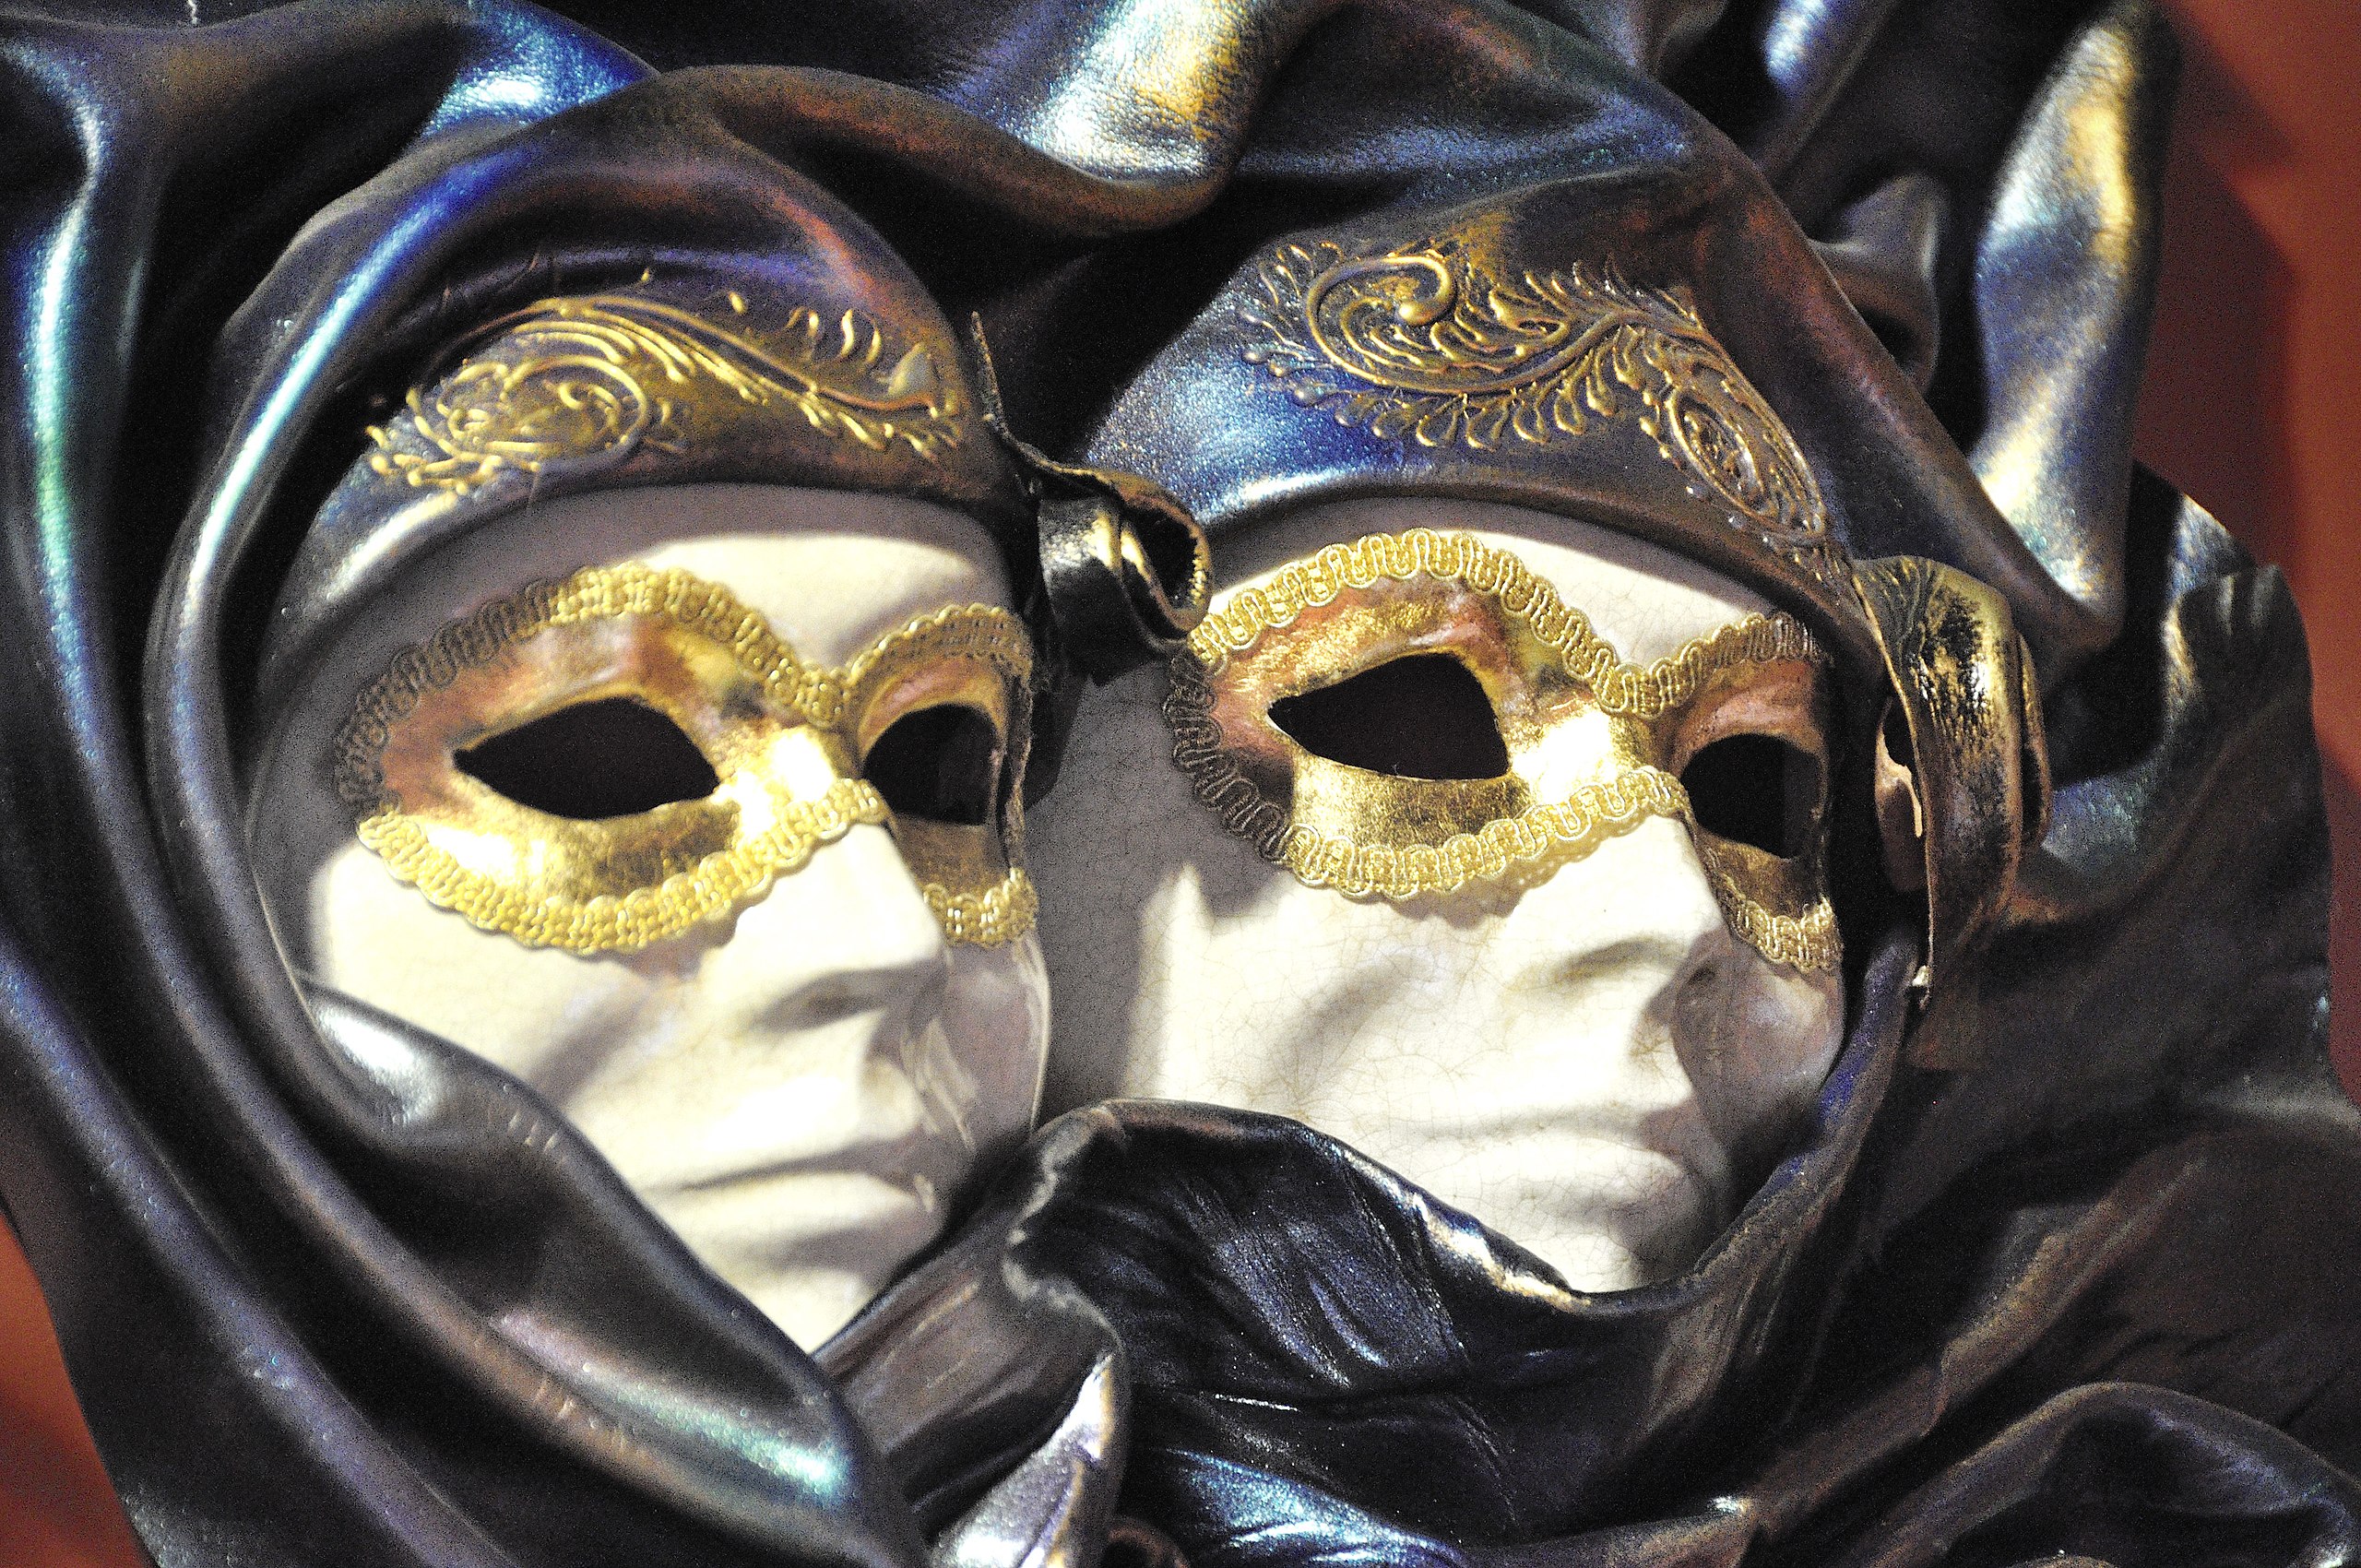 Archivo:Venetian Carnival Mask - Maschera di Carnevale Venice Italy - Creative Commons by gnuckx (4816738038).jpg - Wikipedia, la enciclopedia libre